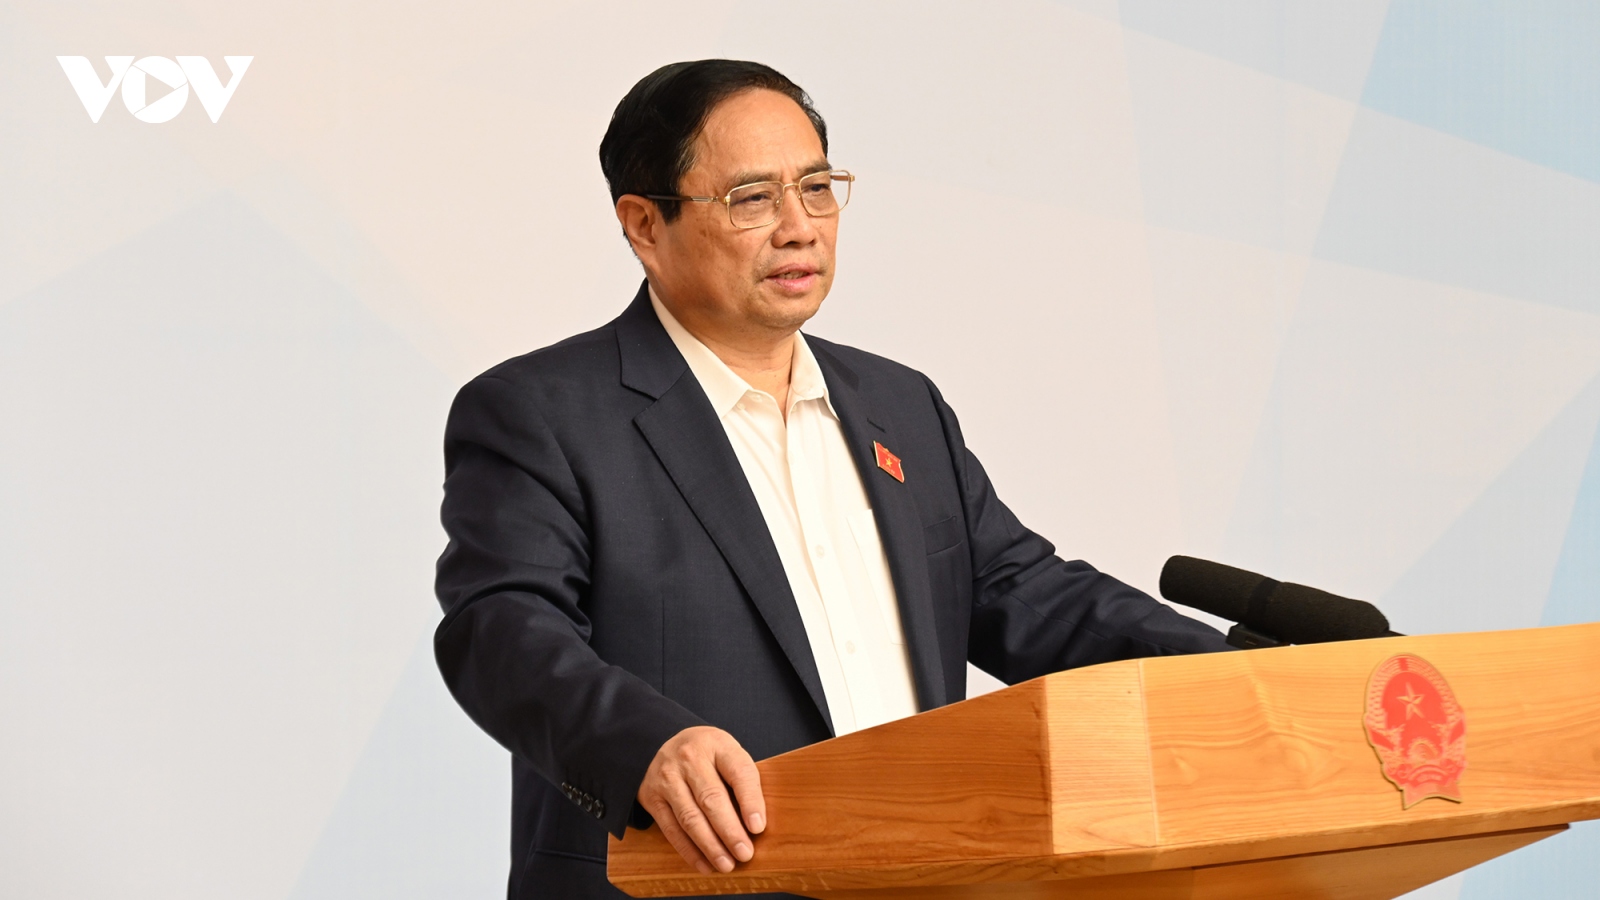 Thủ tướng chủ trì hội nghị phát triển du lịch Việt Nam nhanh, bền vững